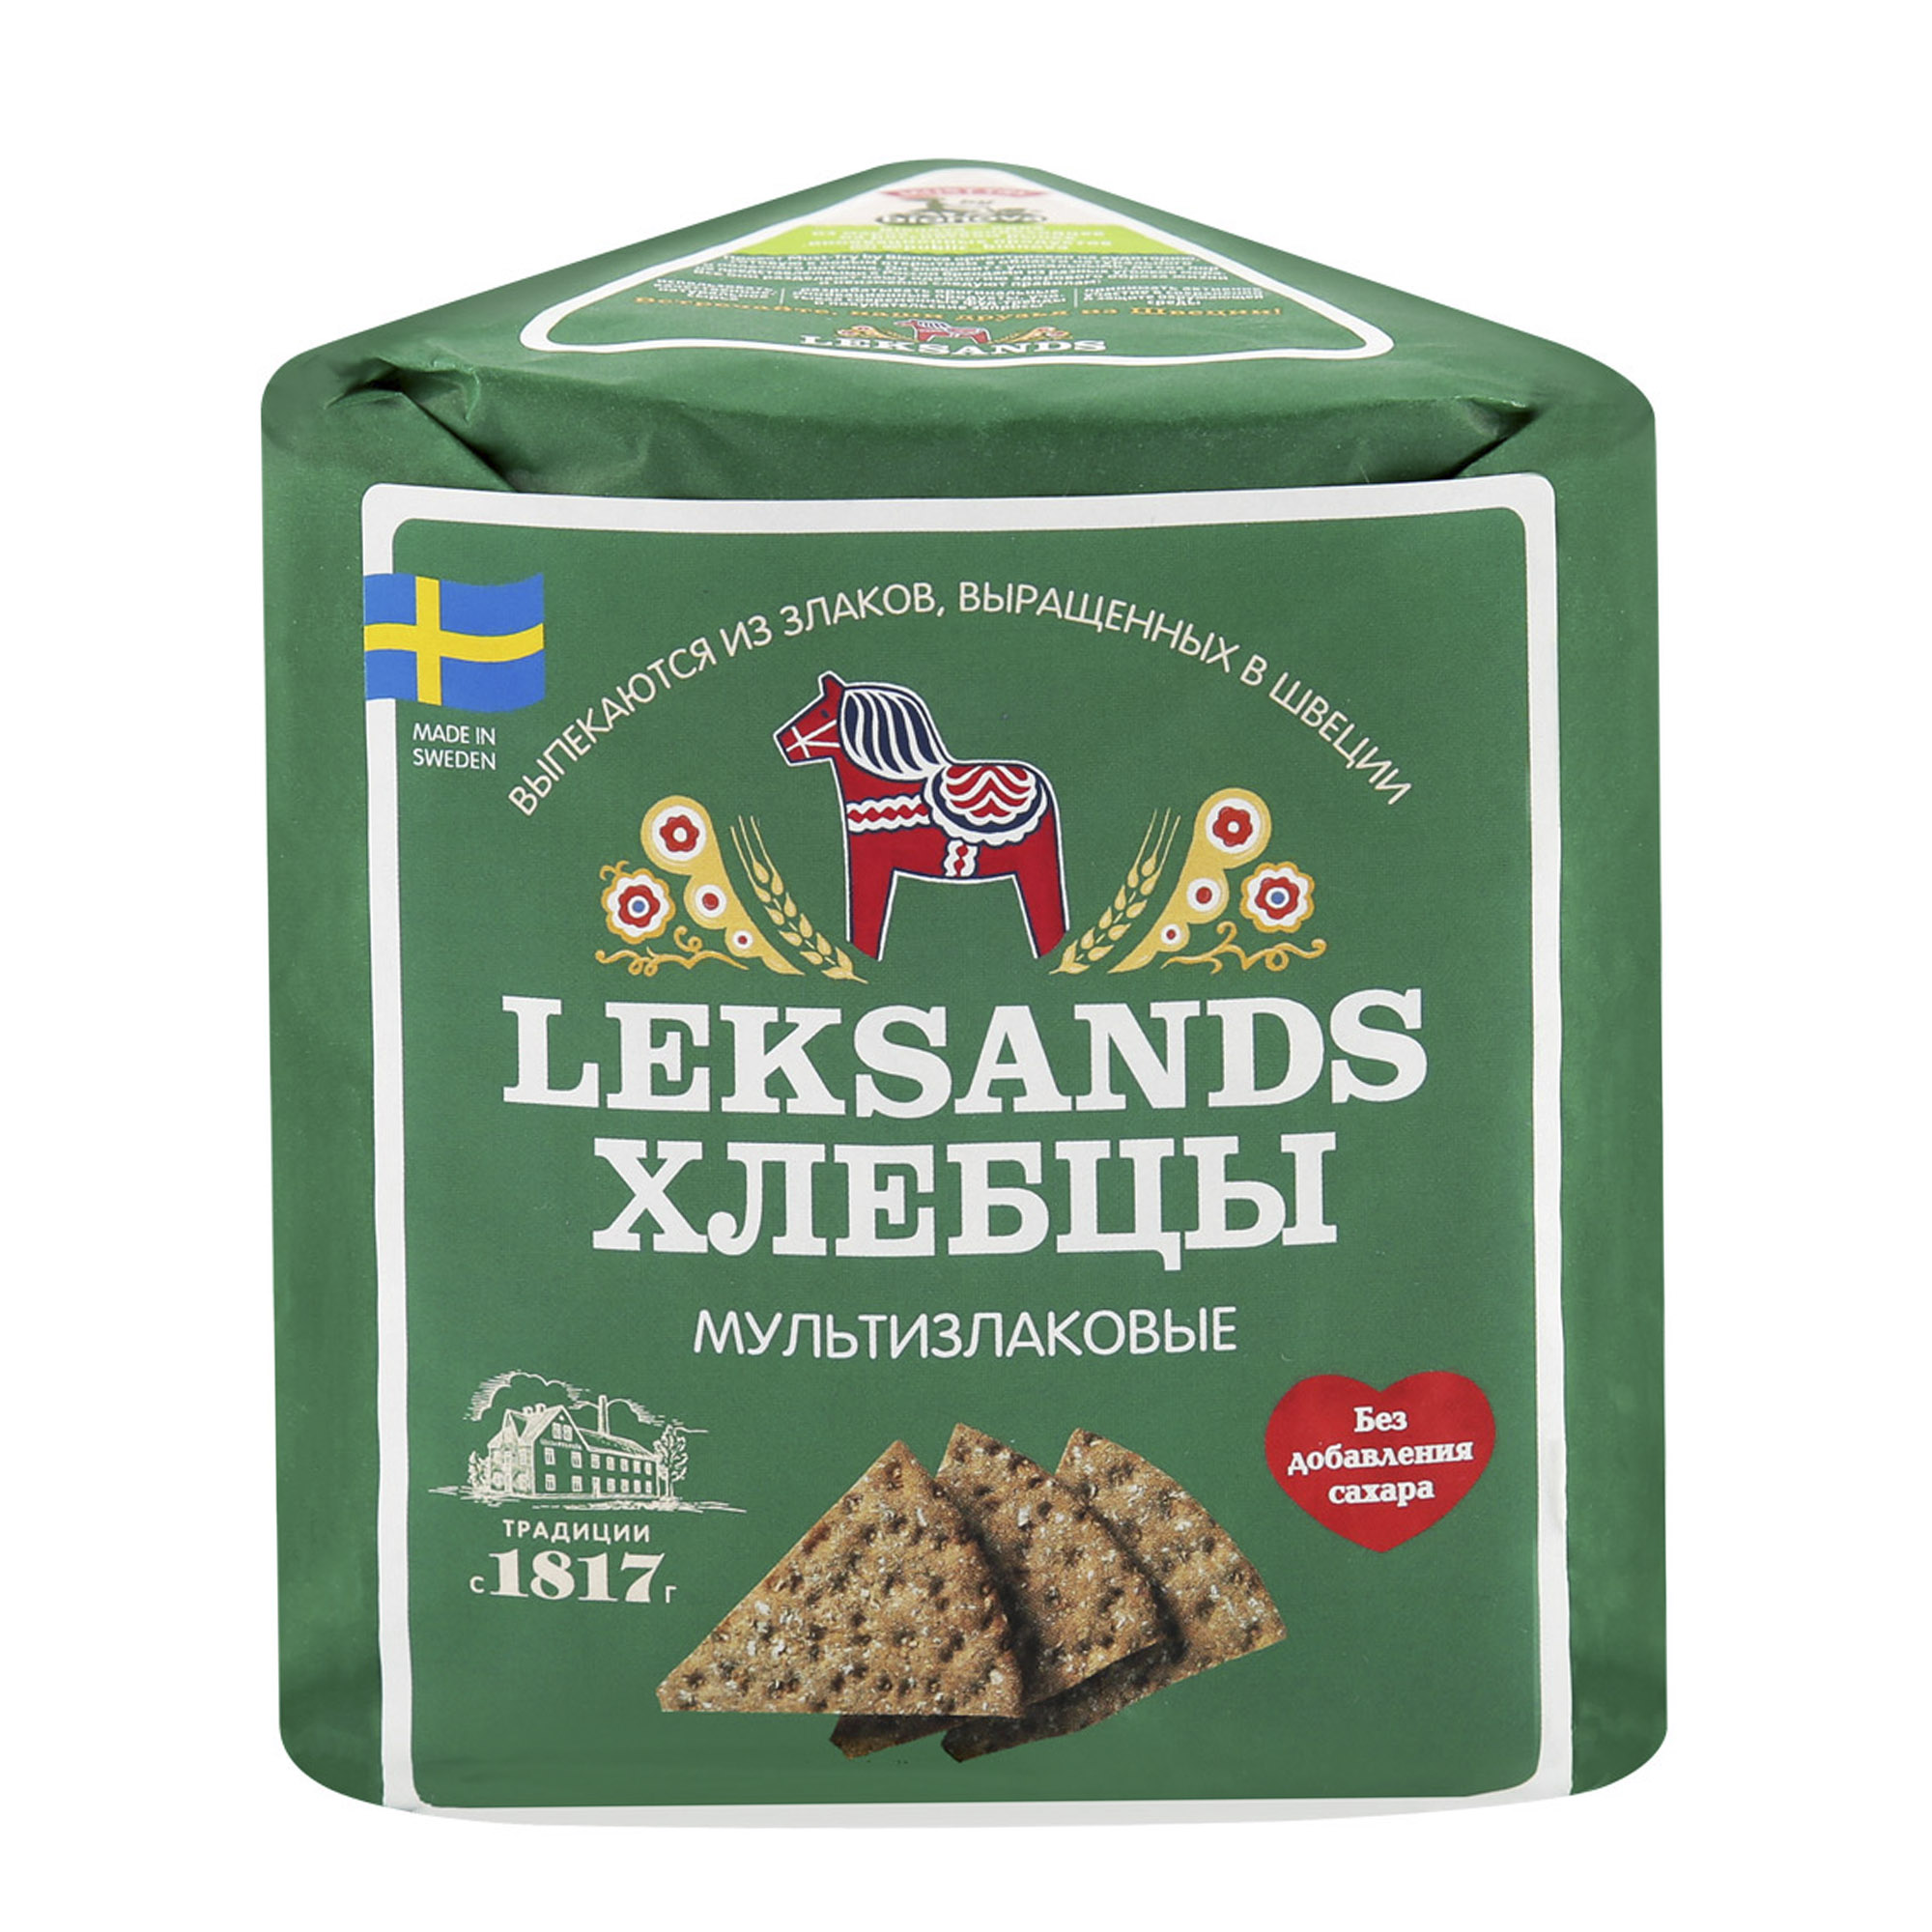 Хлебцы Leksands Мультизлаковые 190 г - фото 1